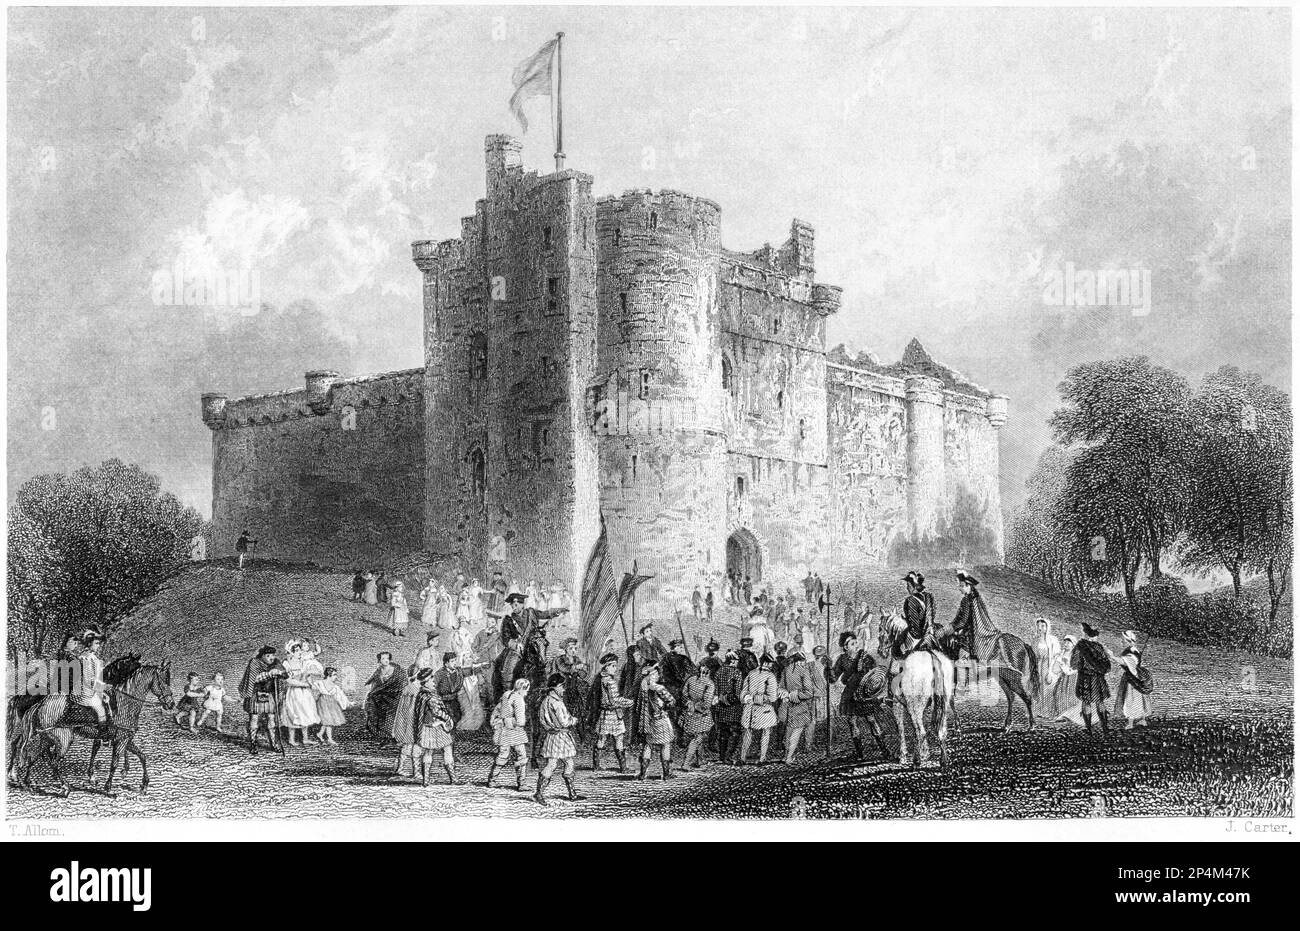 Une gravure du château de Doune (Prince Charles Stuart. Cession de ses prisonniers après la bataille de Falkirk AD 1746) d'un livre de 1840. Banque D'Images